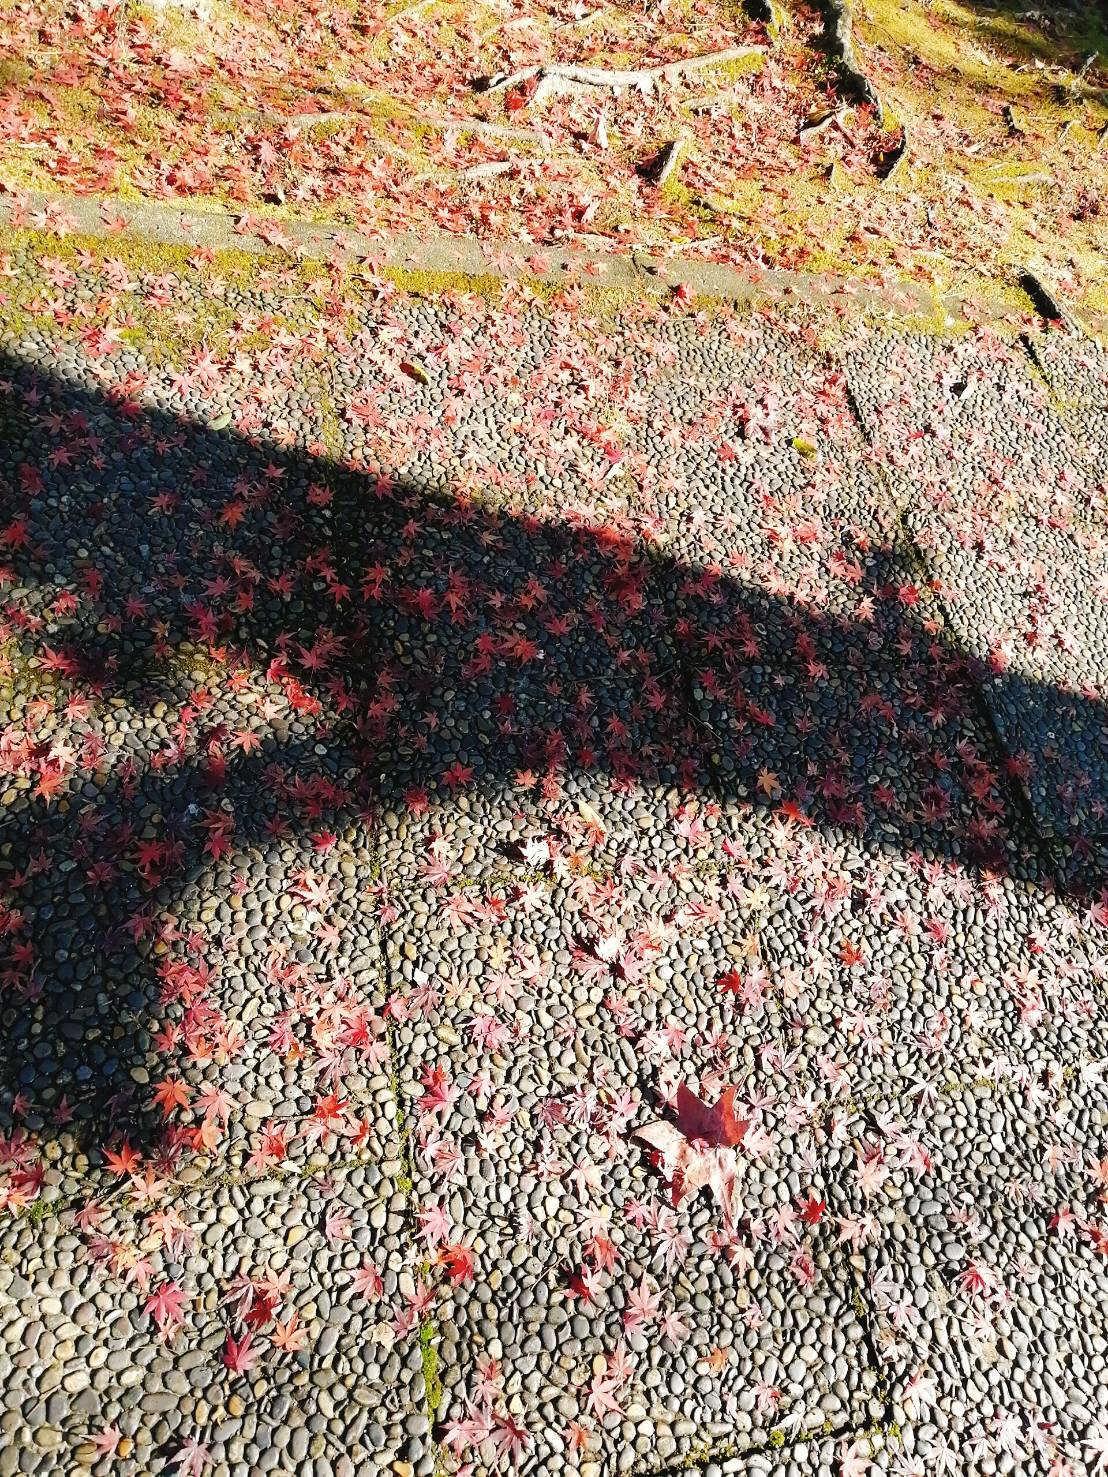 石畳の歩道に落ち、散りばめられたもみじの葉